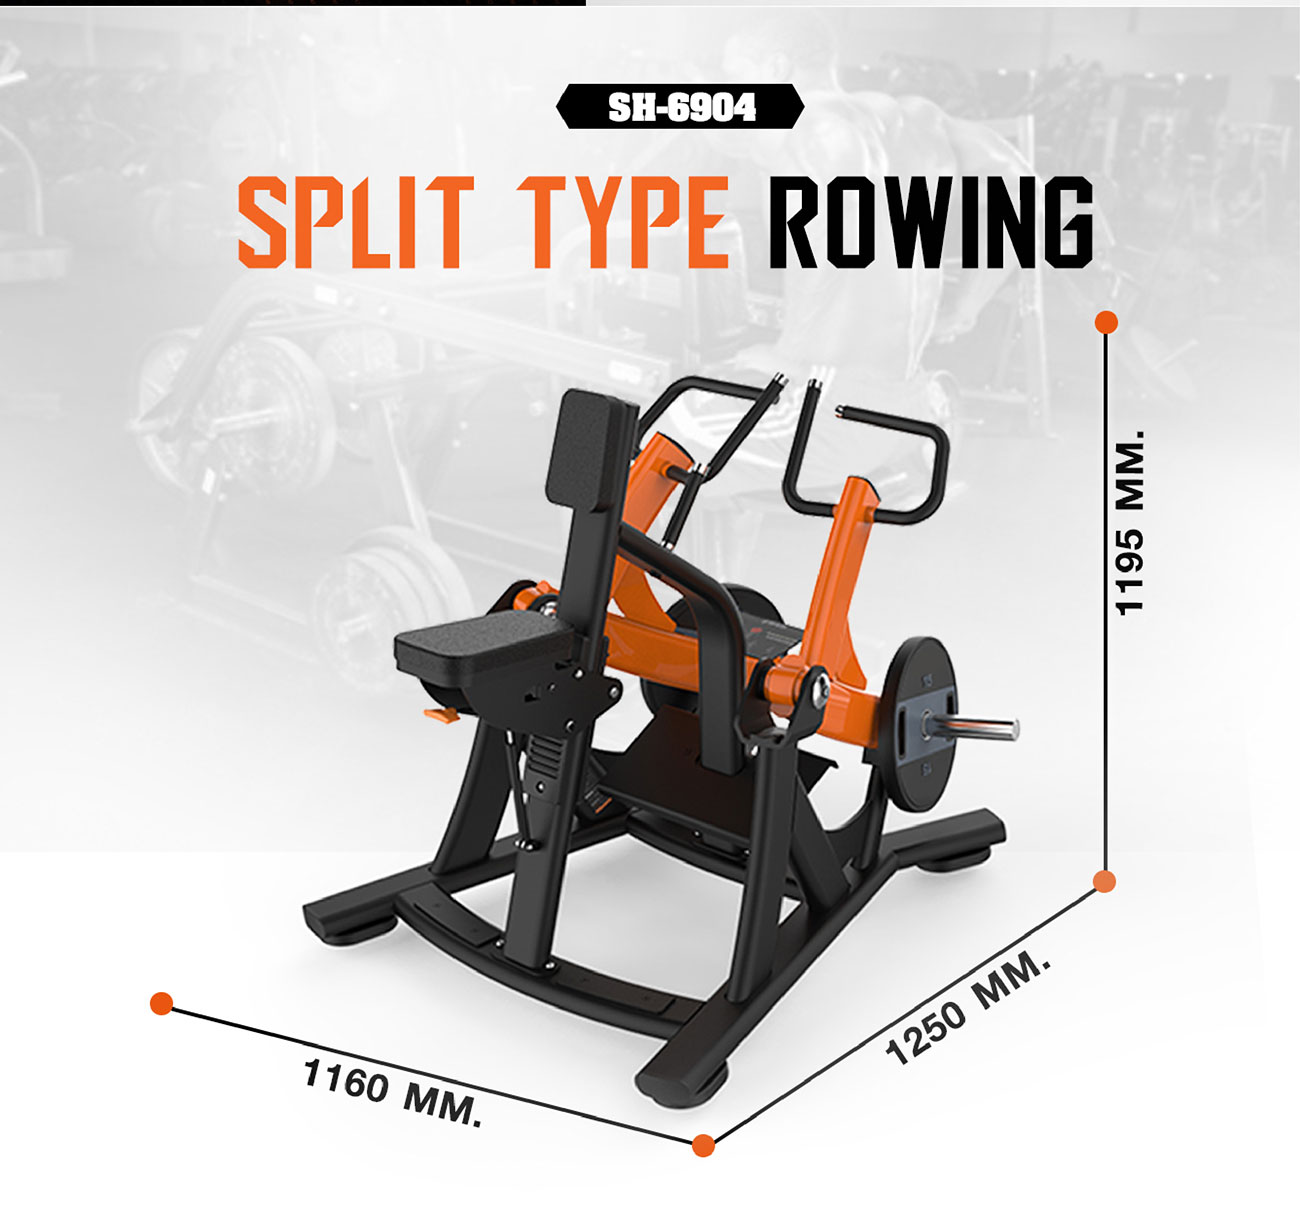 Split type rowing เครื่องบริหารกล้ามเนื้อหลังส่วนกลางSH-6904